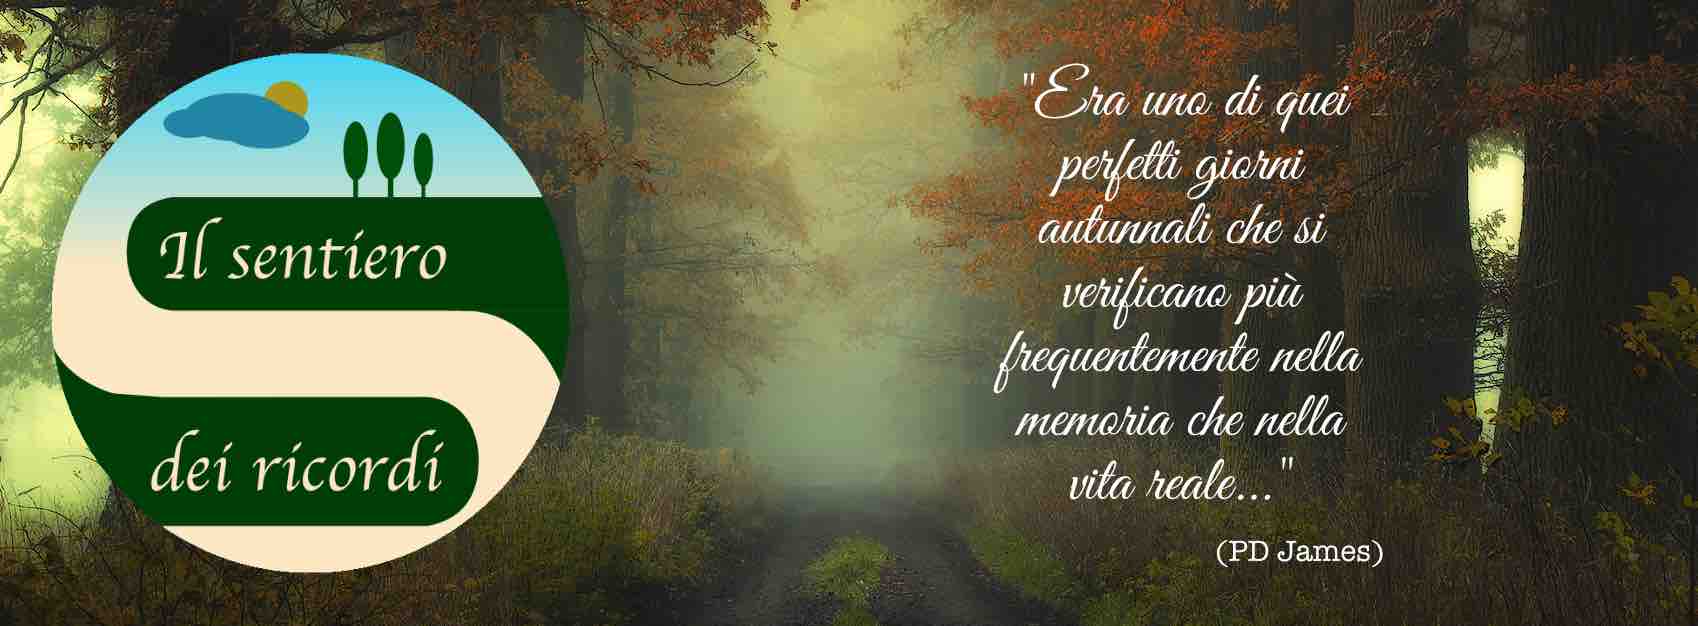 Onoranze Funebri Ricca Eugenia (Il Sentiero dei ricordi) sfondo pagina di Facebook